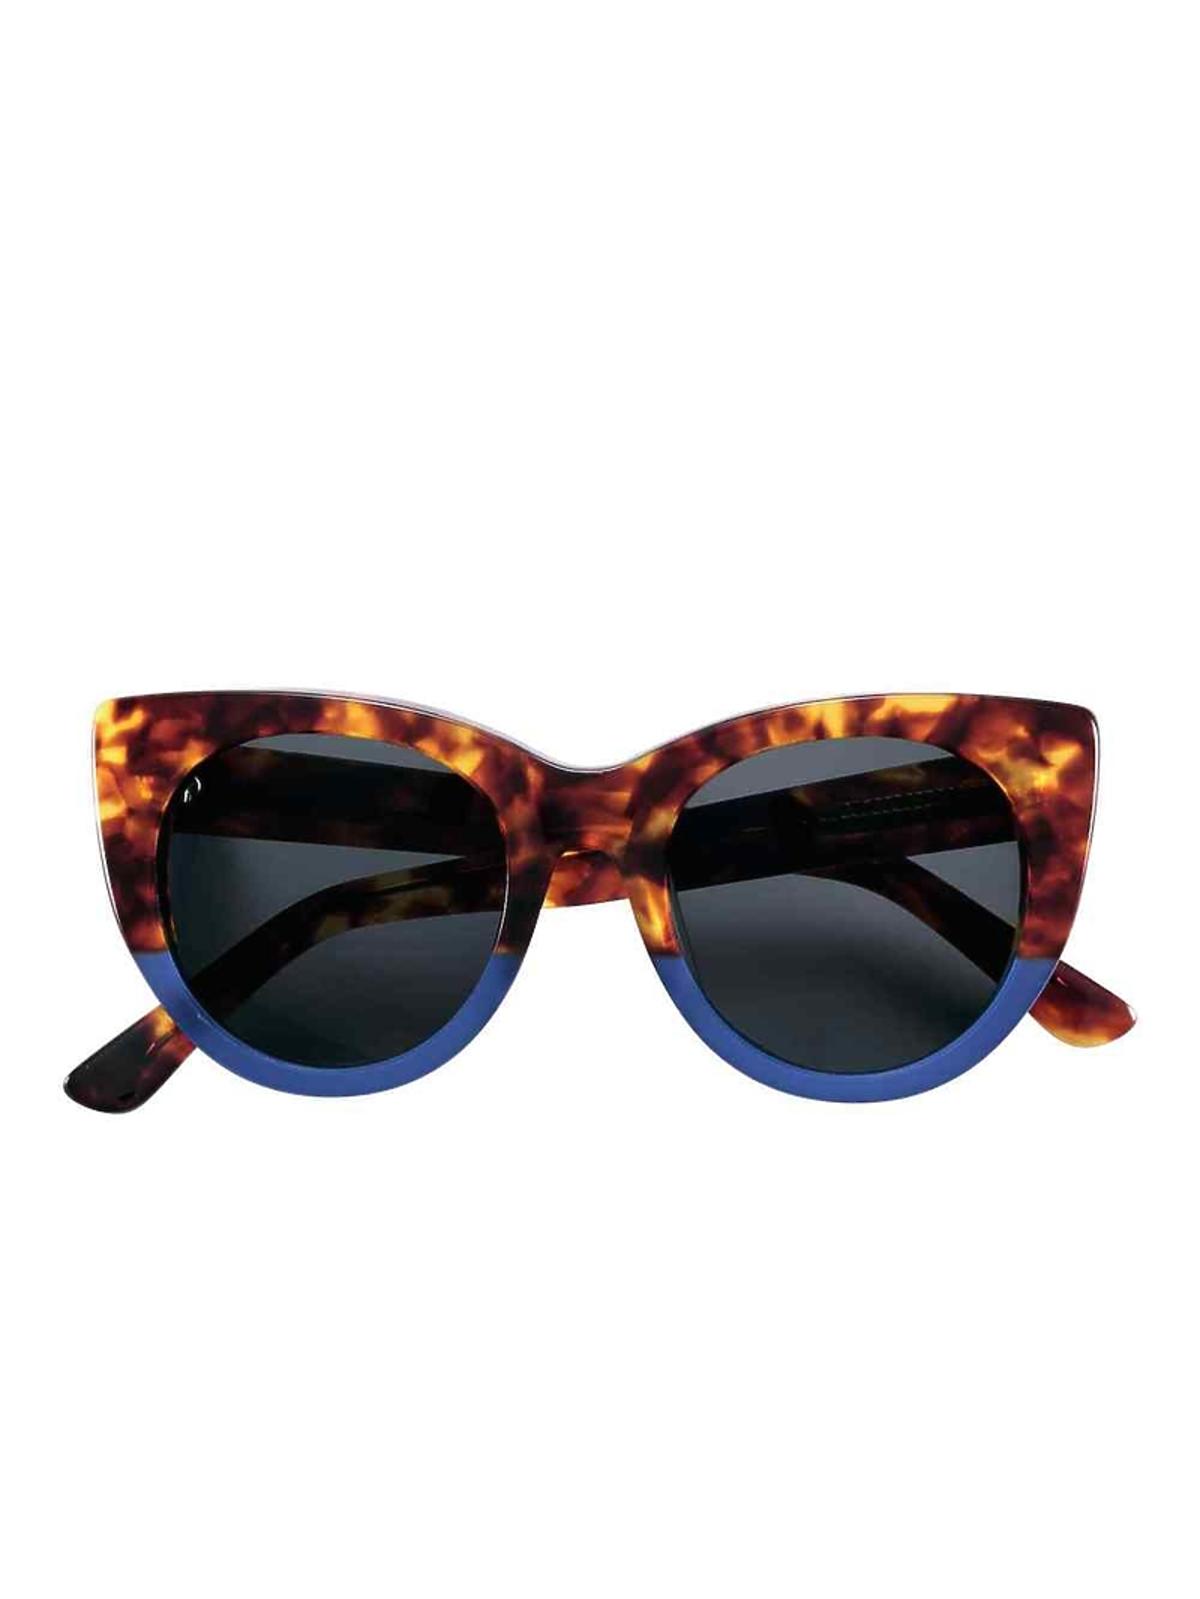 Okulary przeciwsłoneczne marki H&M, 99,90 zł